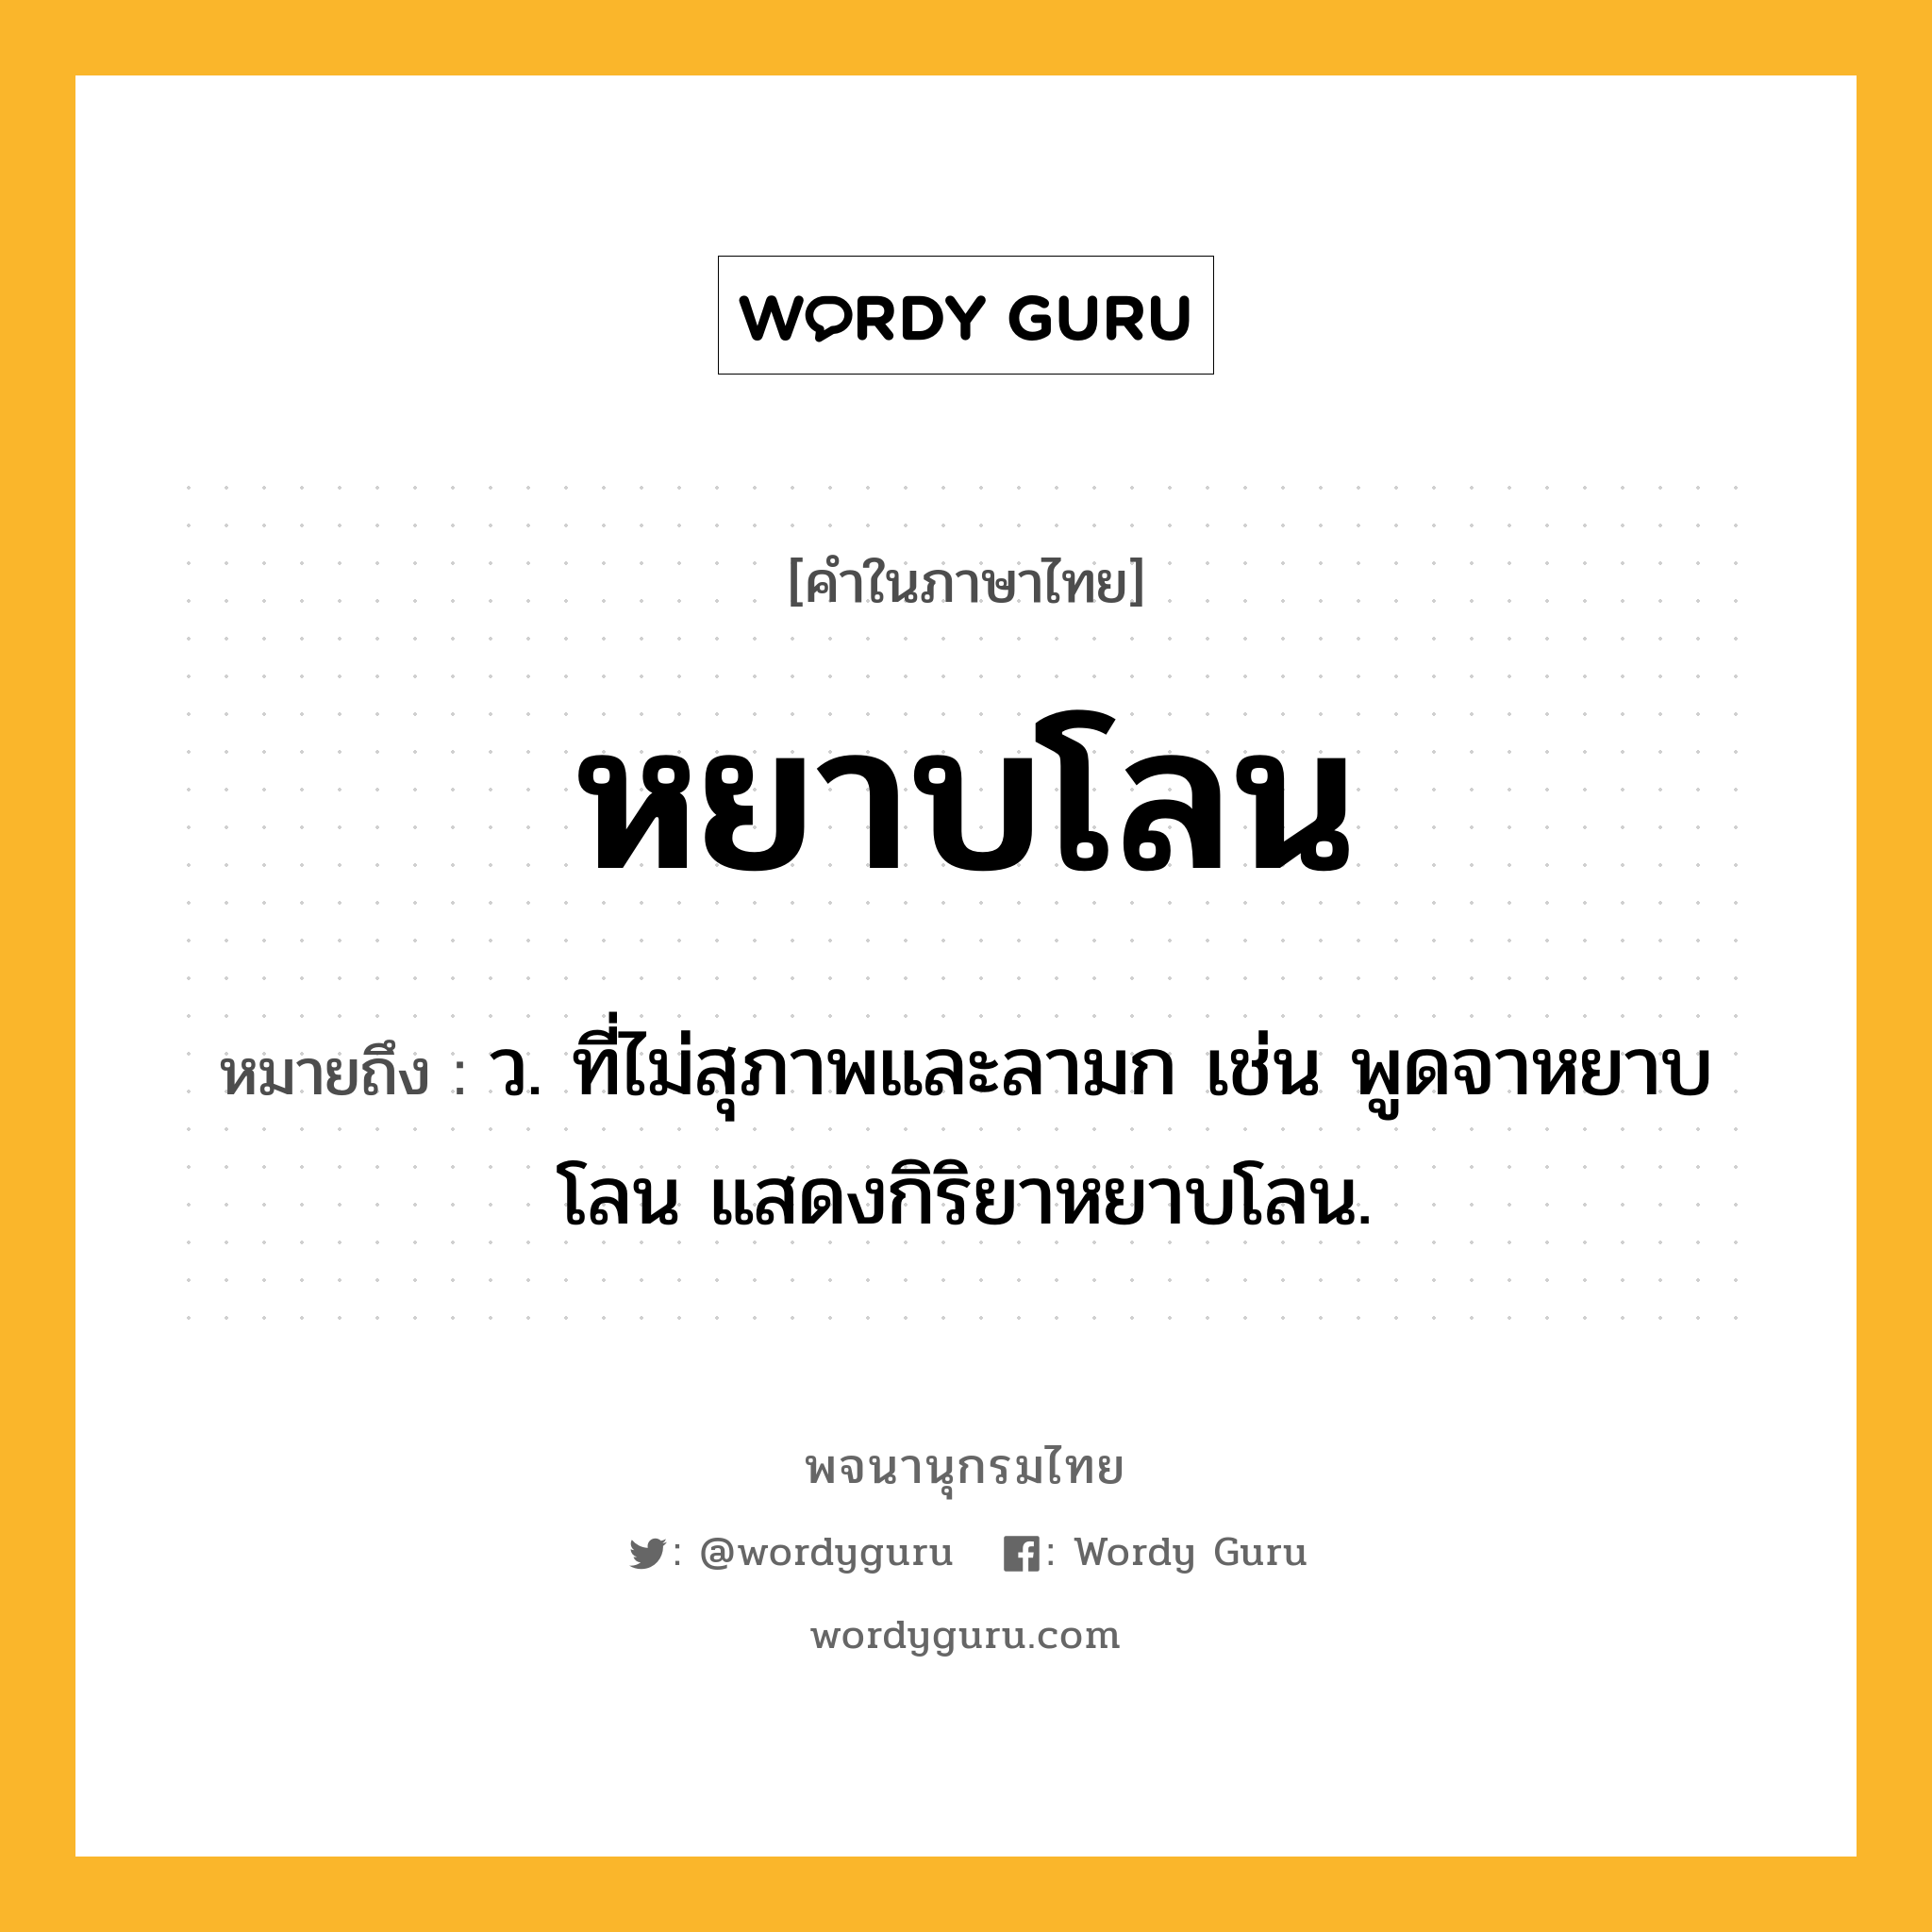 หยาบโลน ความหมาย หมายถึงอะไร?, คำในภาษาไทย หยาบโลน หมายถึง ว. ที่ไม่สุภาพและลามก เช่น พูดจาหยาบโลน แสดงกิริยาหยาบโลน.